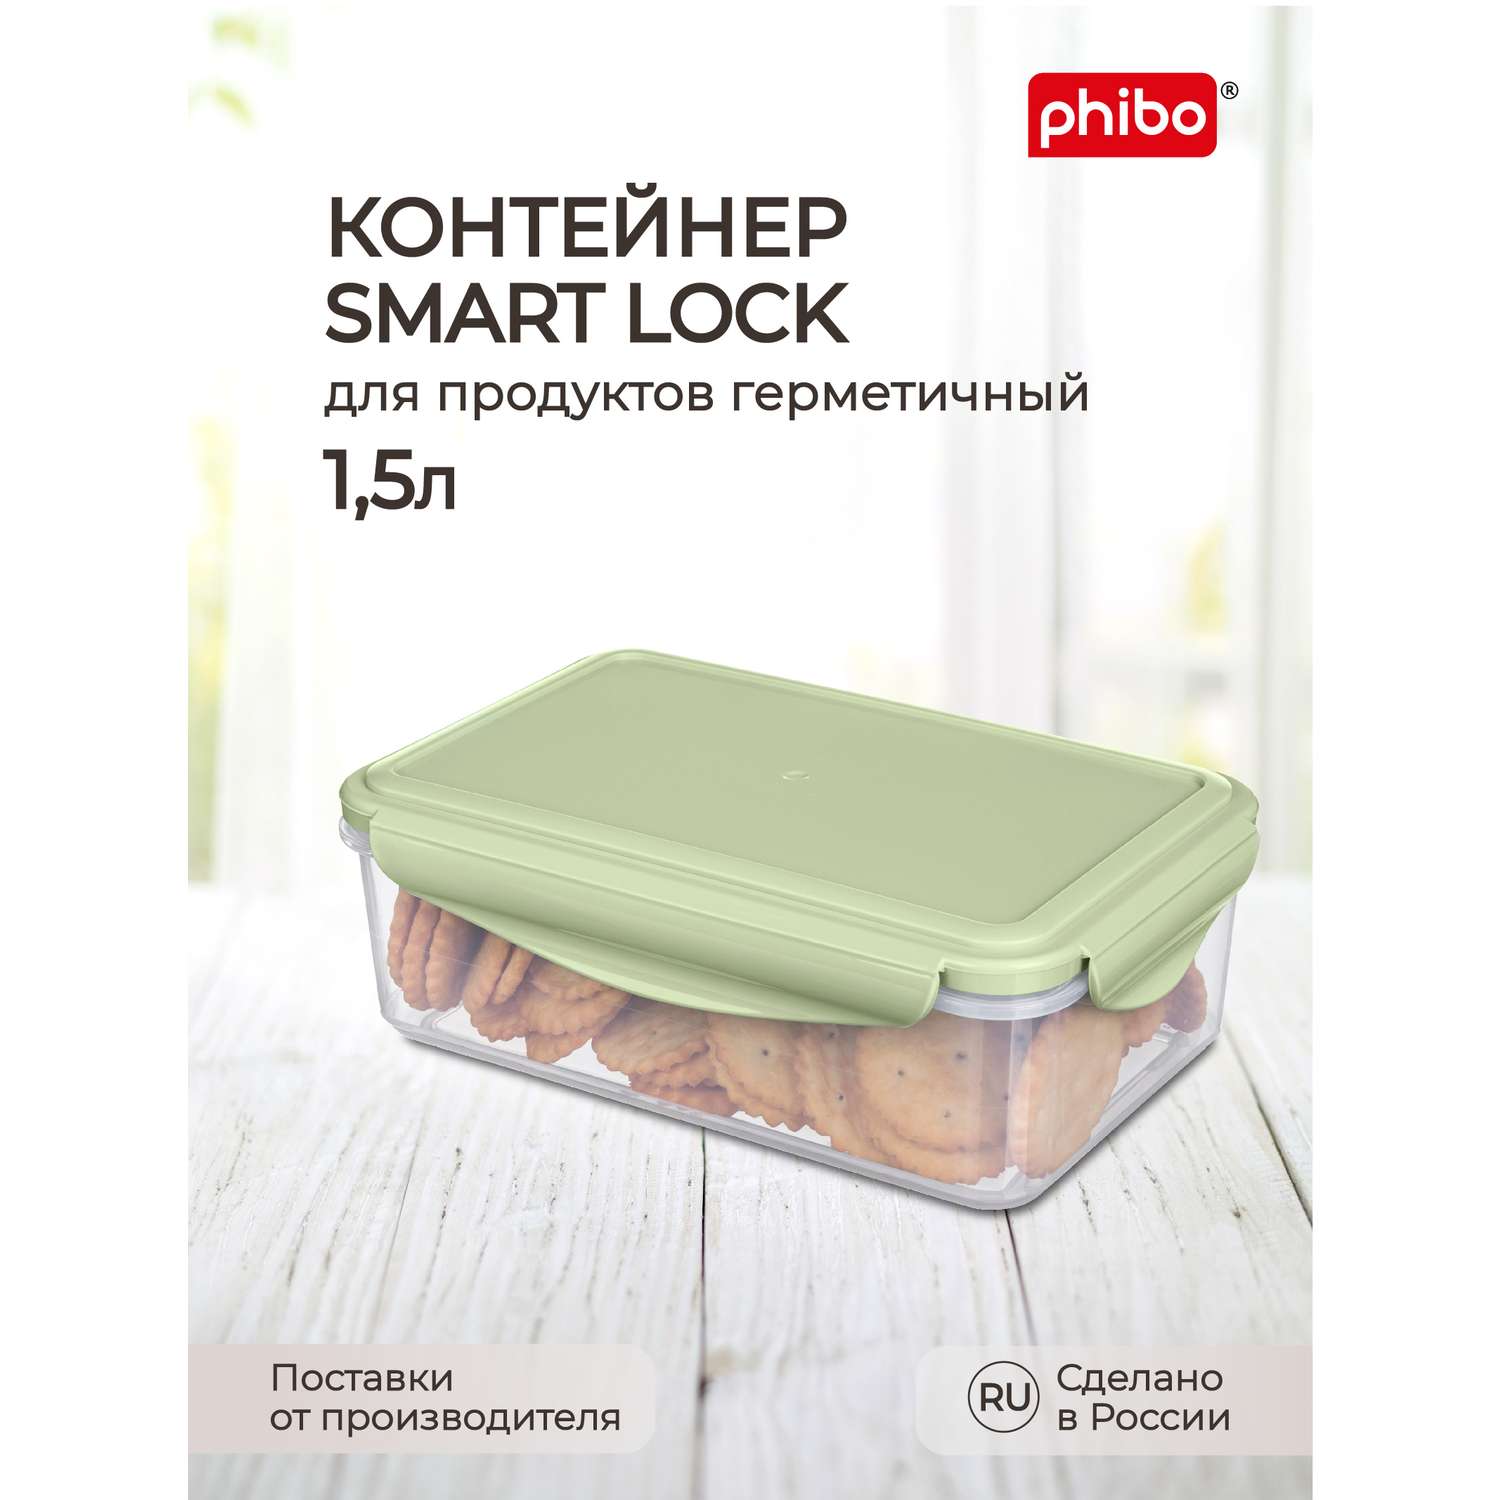 Контейнер Phibo для продуктов герметичный Smart Lock прямоугольный 1.5л зеленый - фото 1